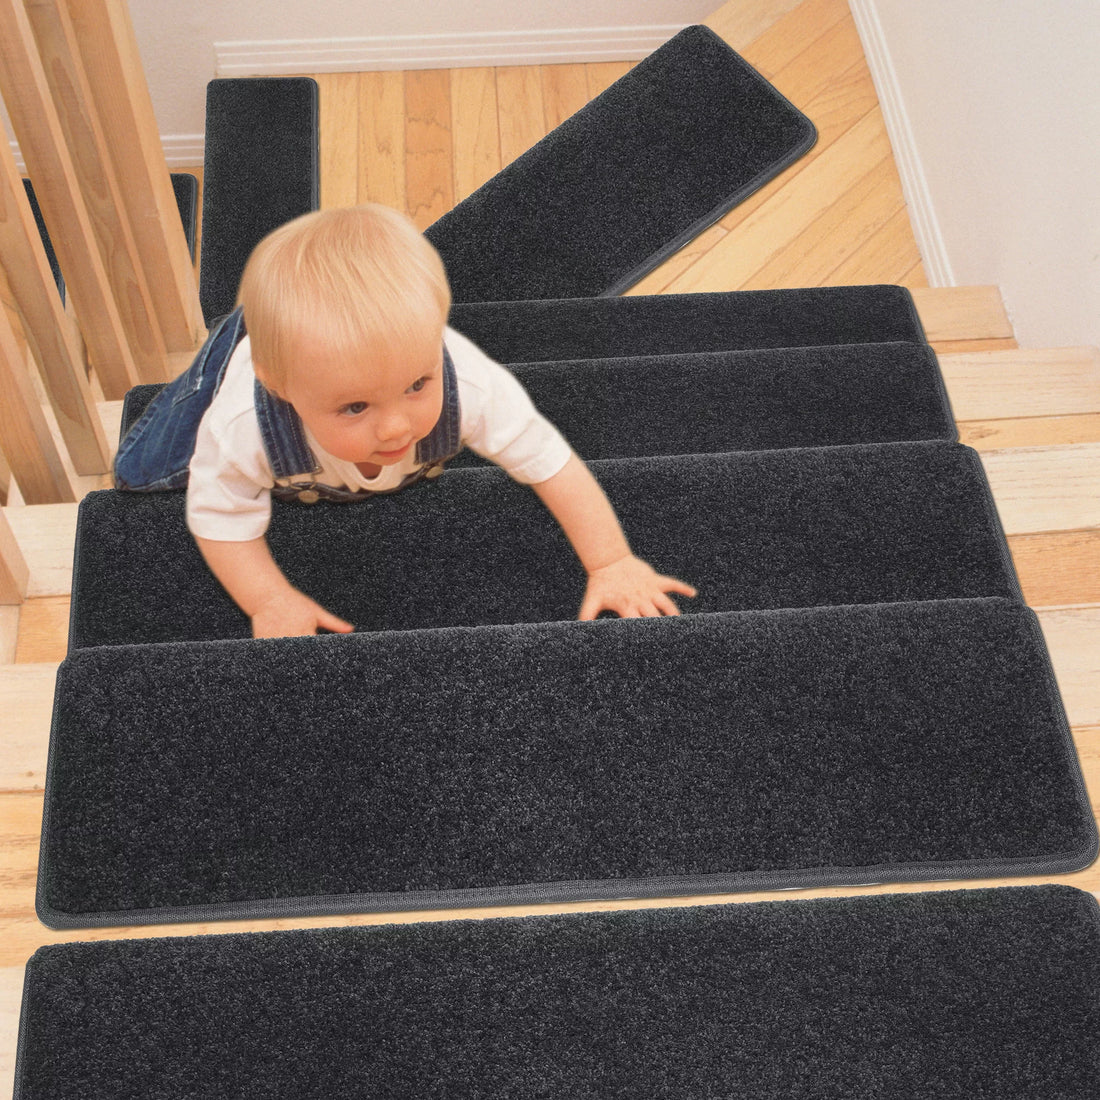 Carpet Stair Treads Indoor, Stair Tread Rug, Stair Step Rug, Stair Treads for Wood Stairs, Stair Step Rug, Stairs with Carpet Treads Set of 14